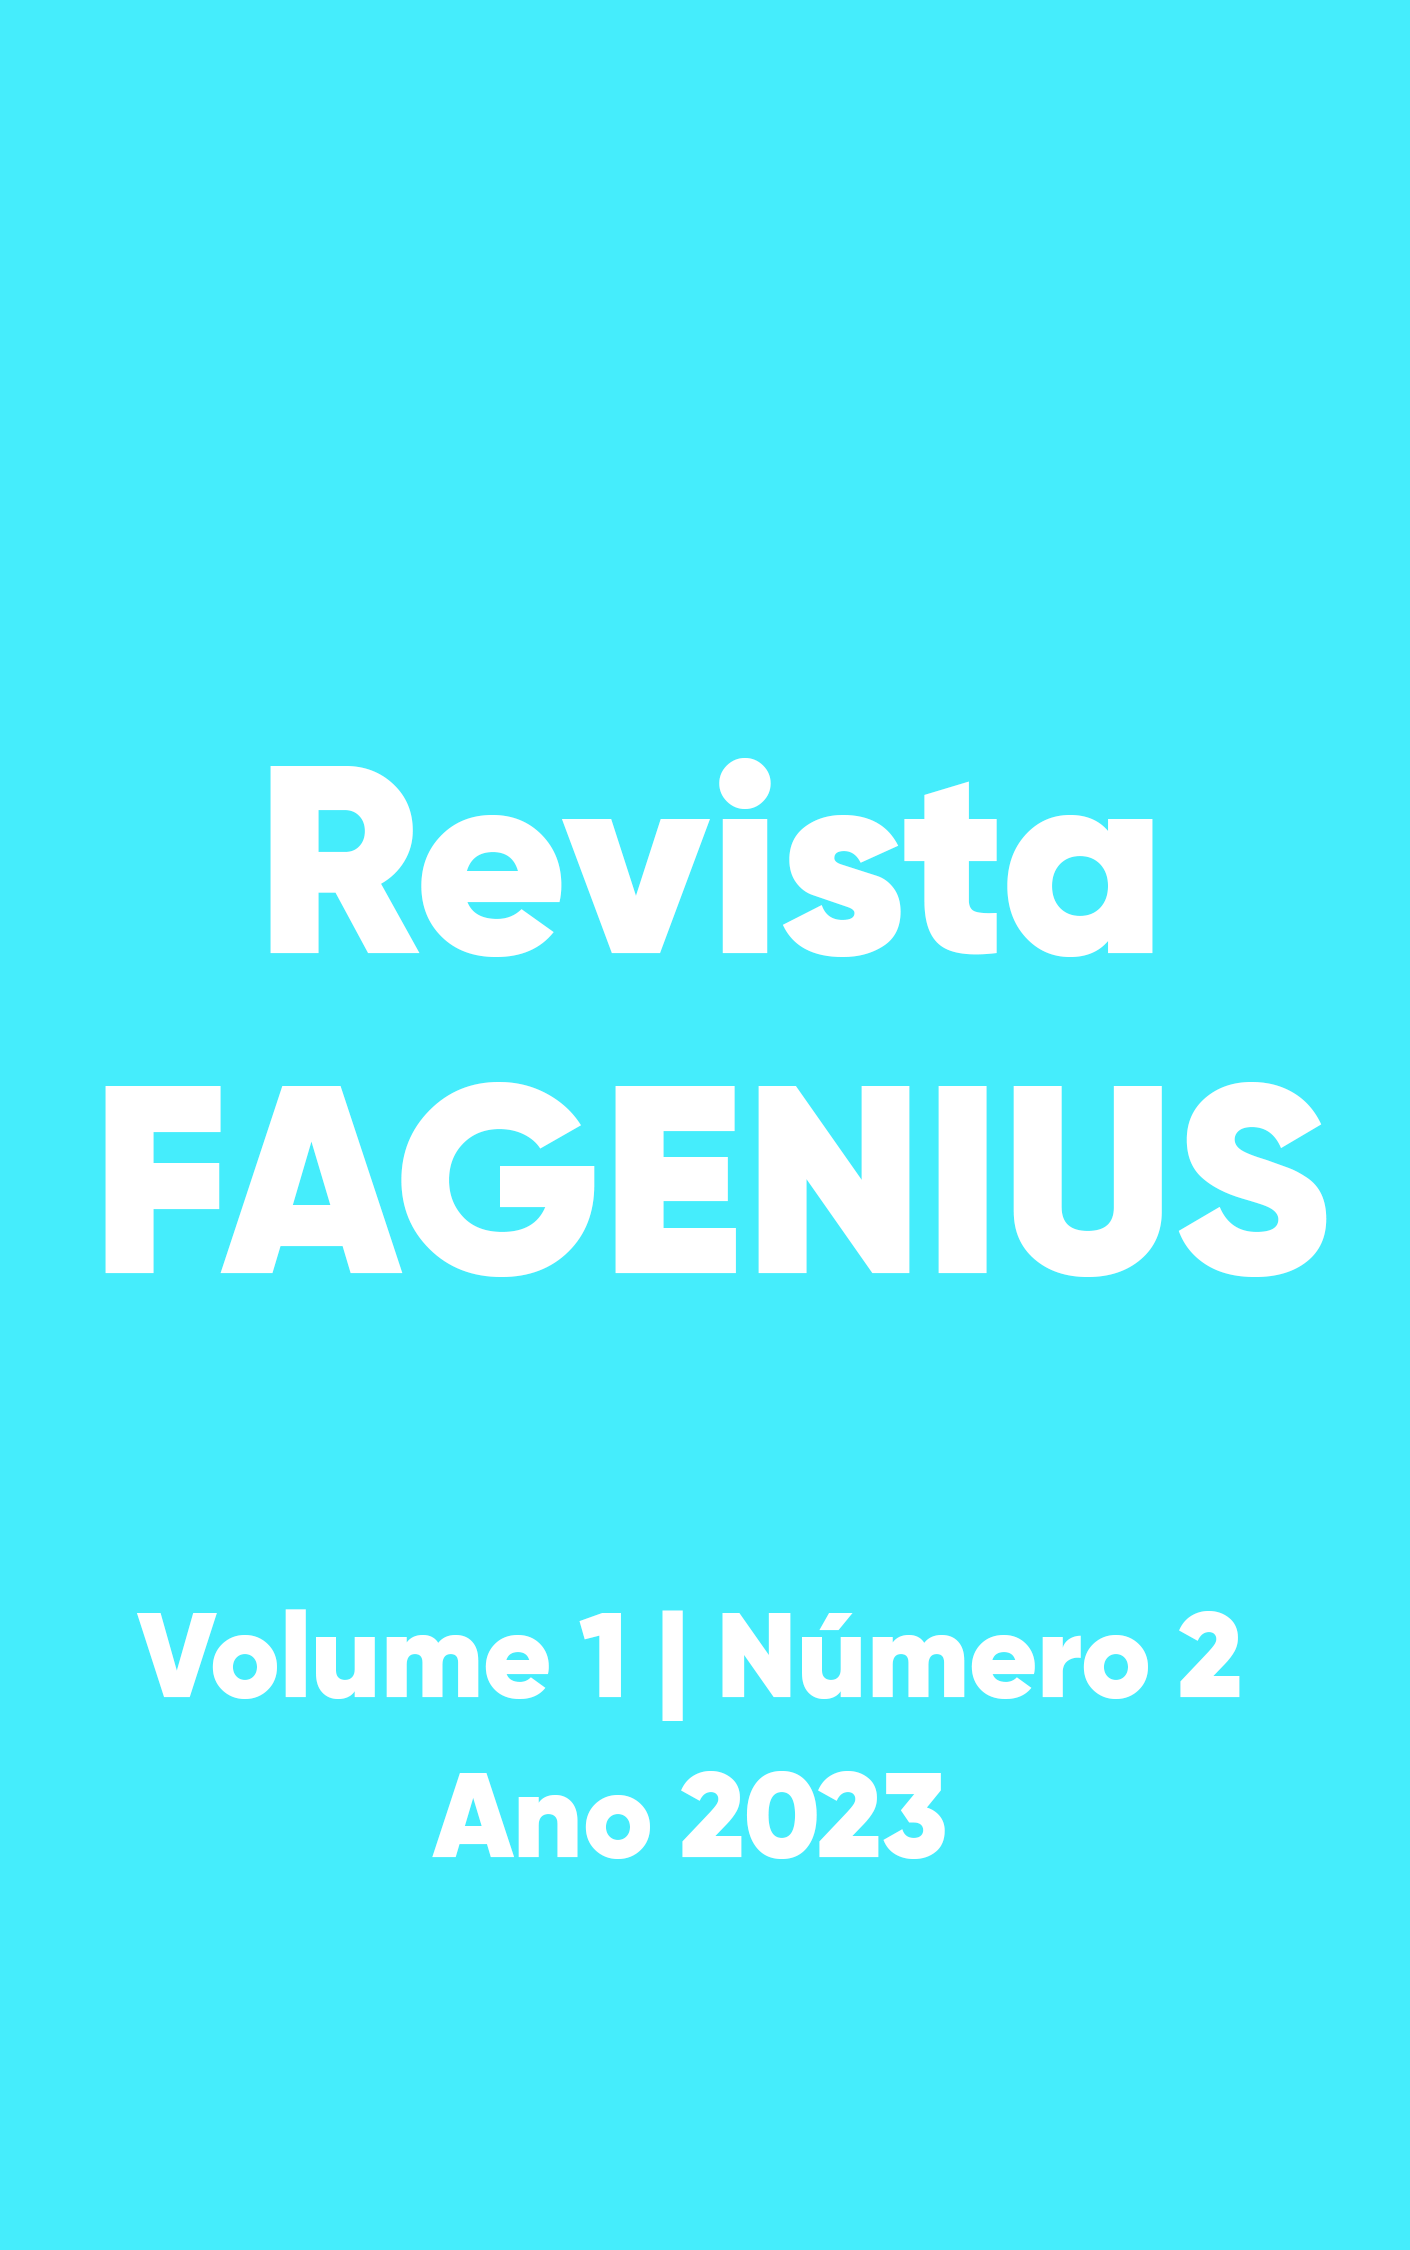 					Visualizar Revista FAGENIUS, v. 1, n. 2, 2023
				